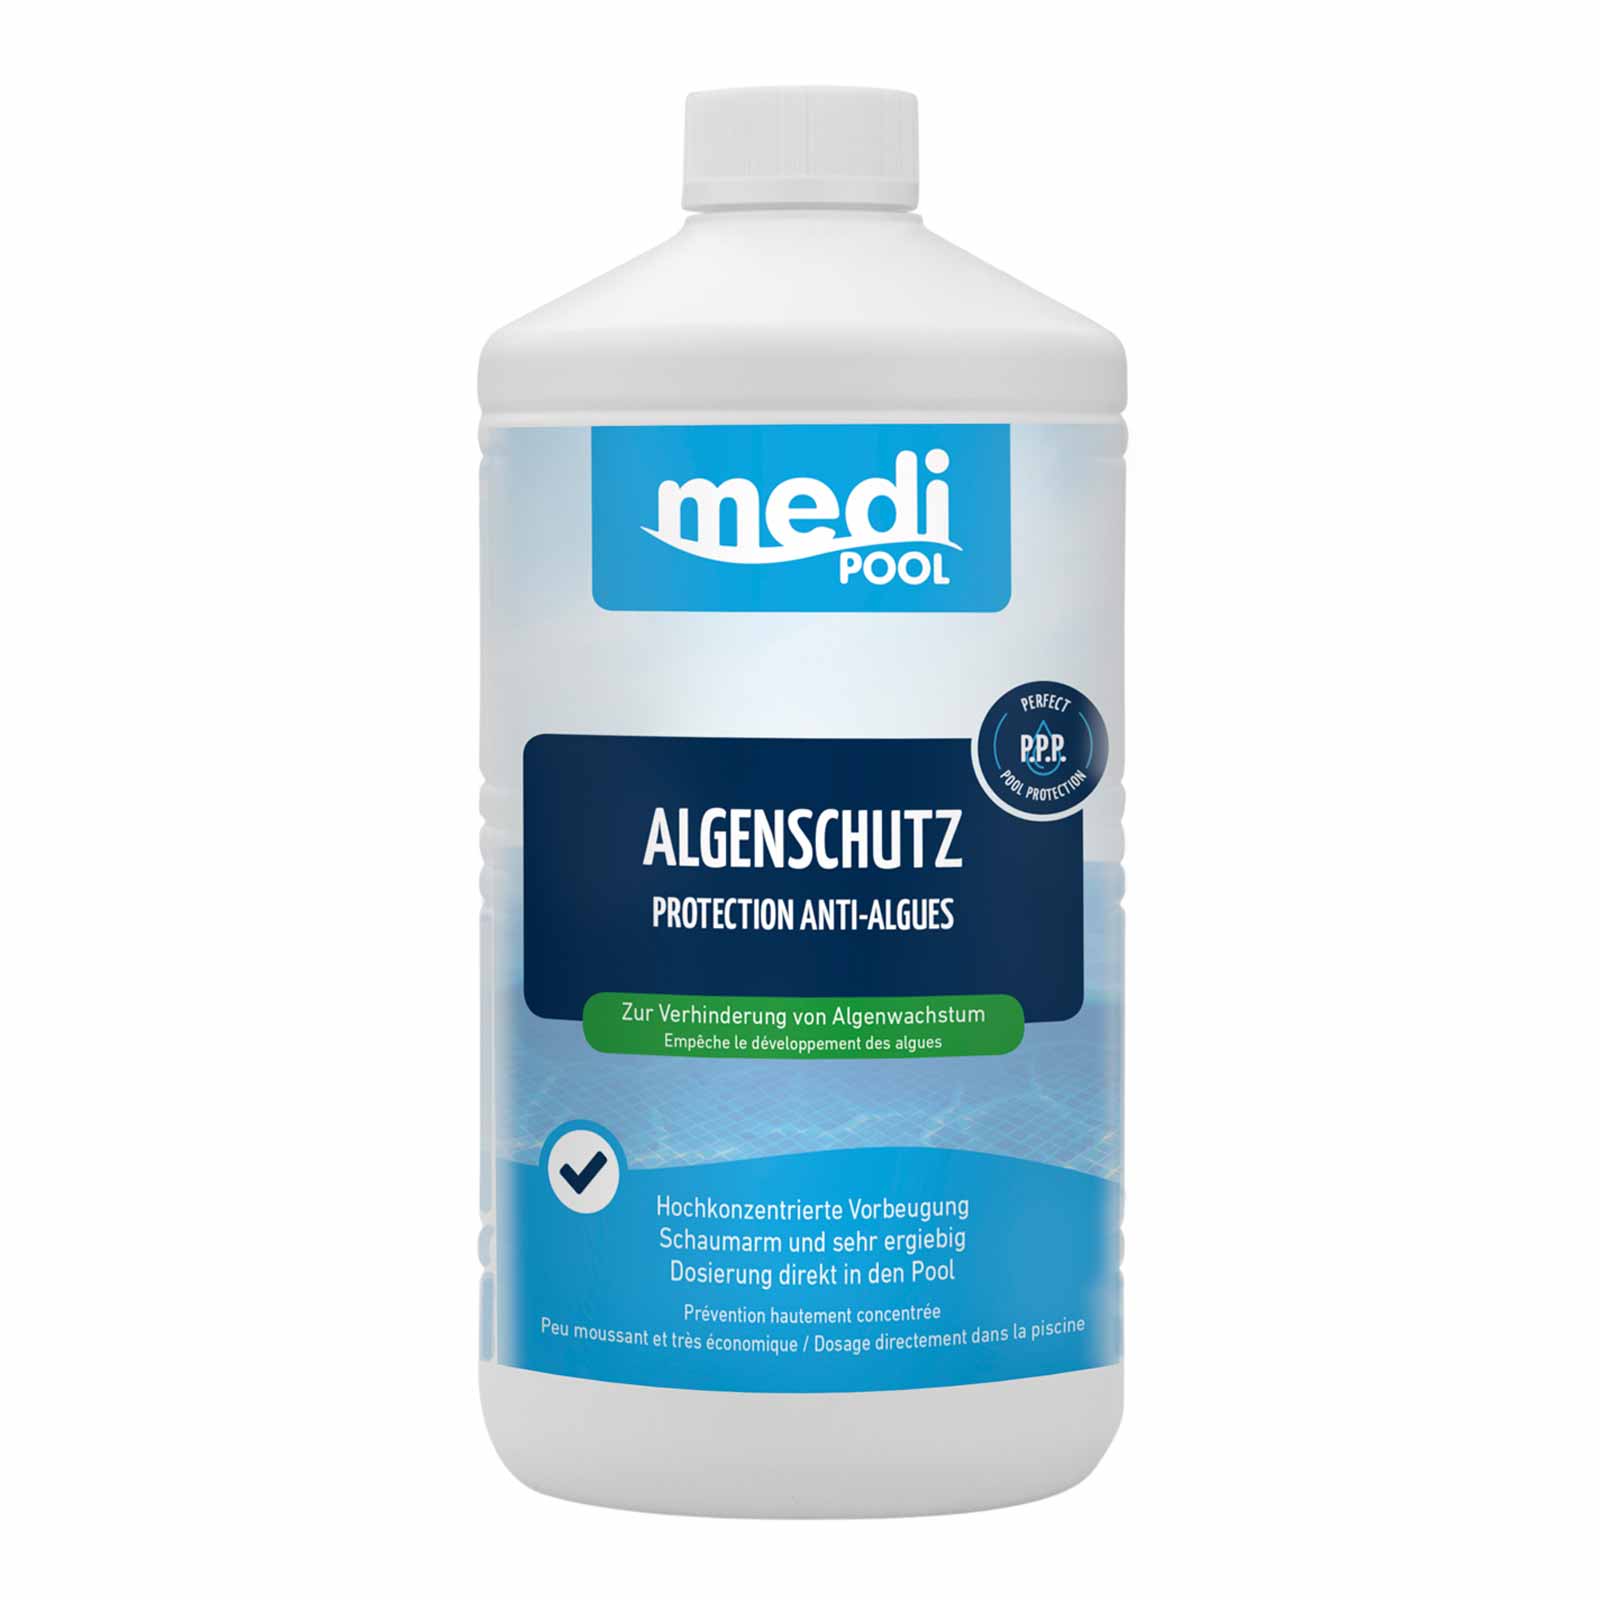 mediPOOL Algenschutz, Algenverhütung, Algenvernichter, Algenschutzmittel Inhalt:1 Liter von mediPOOL